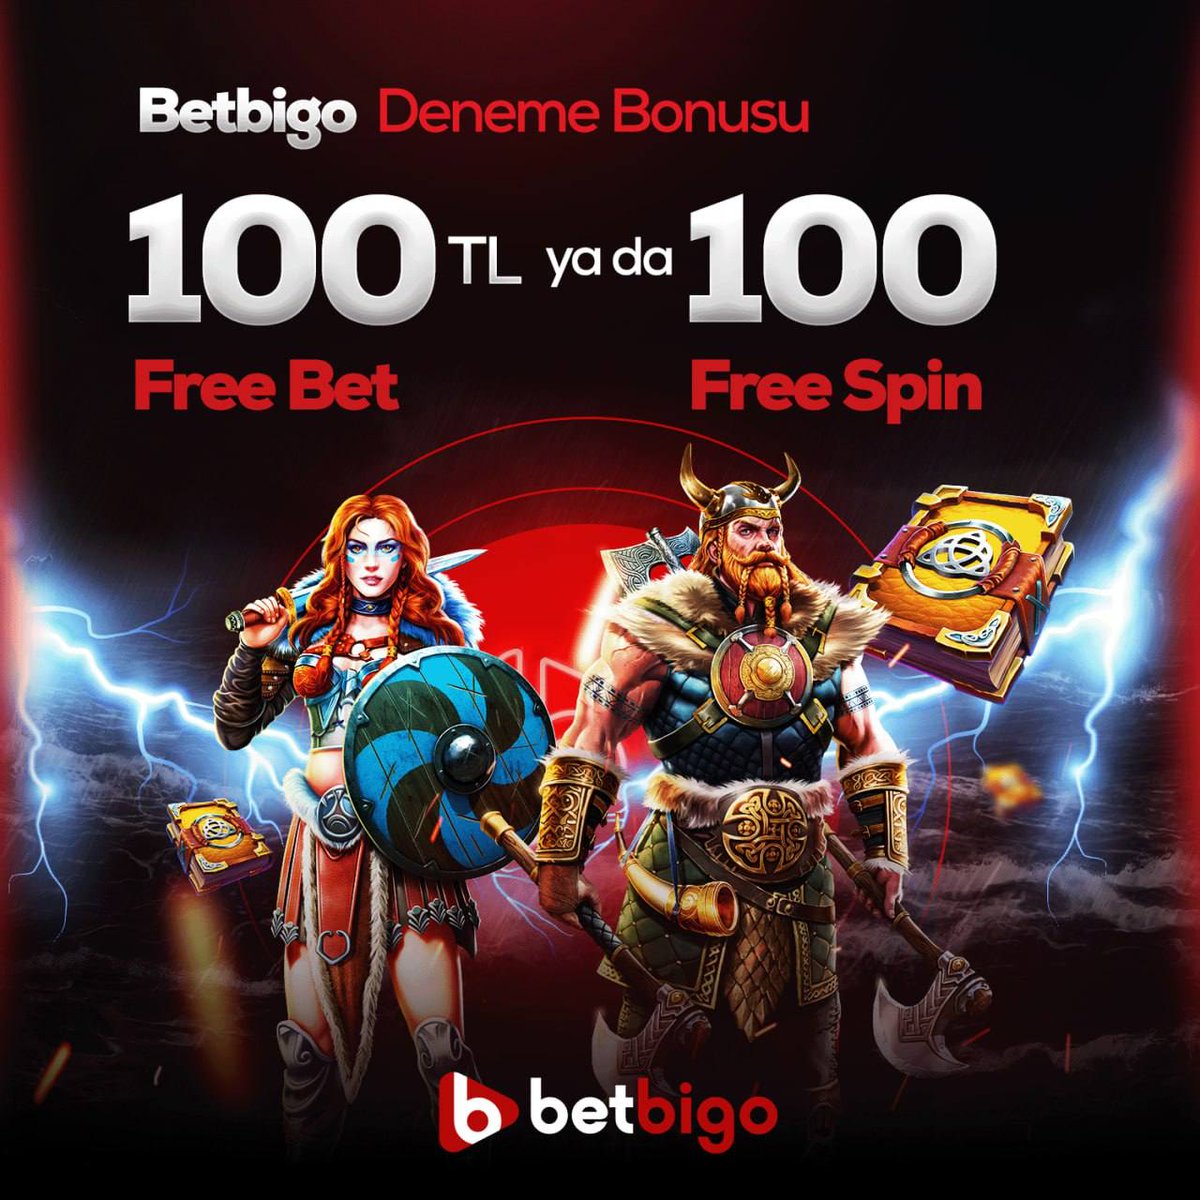 DENEYİN, FARKI HİSSEDİN! 

Betbigo'nun kazandıran dünyasında yerinizi alın,

🎁100₺ Freebet ya da 100 Freespin seçenekli Deneme Bonusu ile kazanmaya anında başlayın! 

Kazandıran ve eğlendiren oyunlar Betbigo'da sizi bekliyor!

Giriş: shorturl.at/fhN26